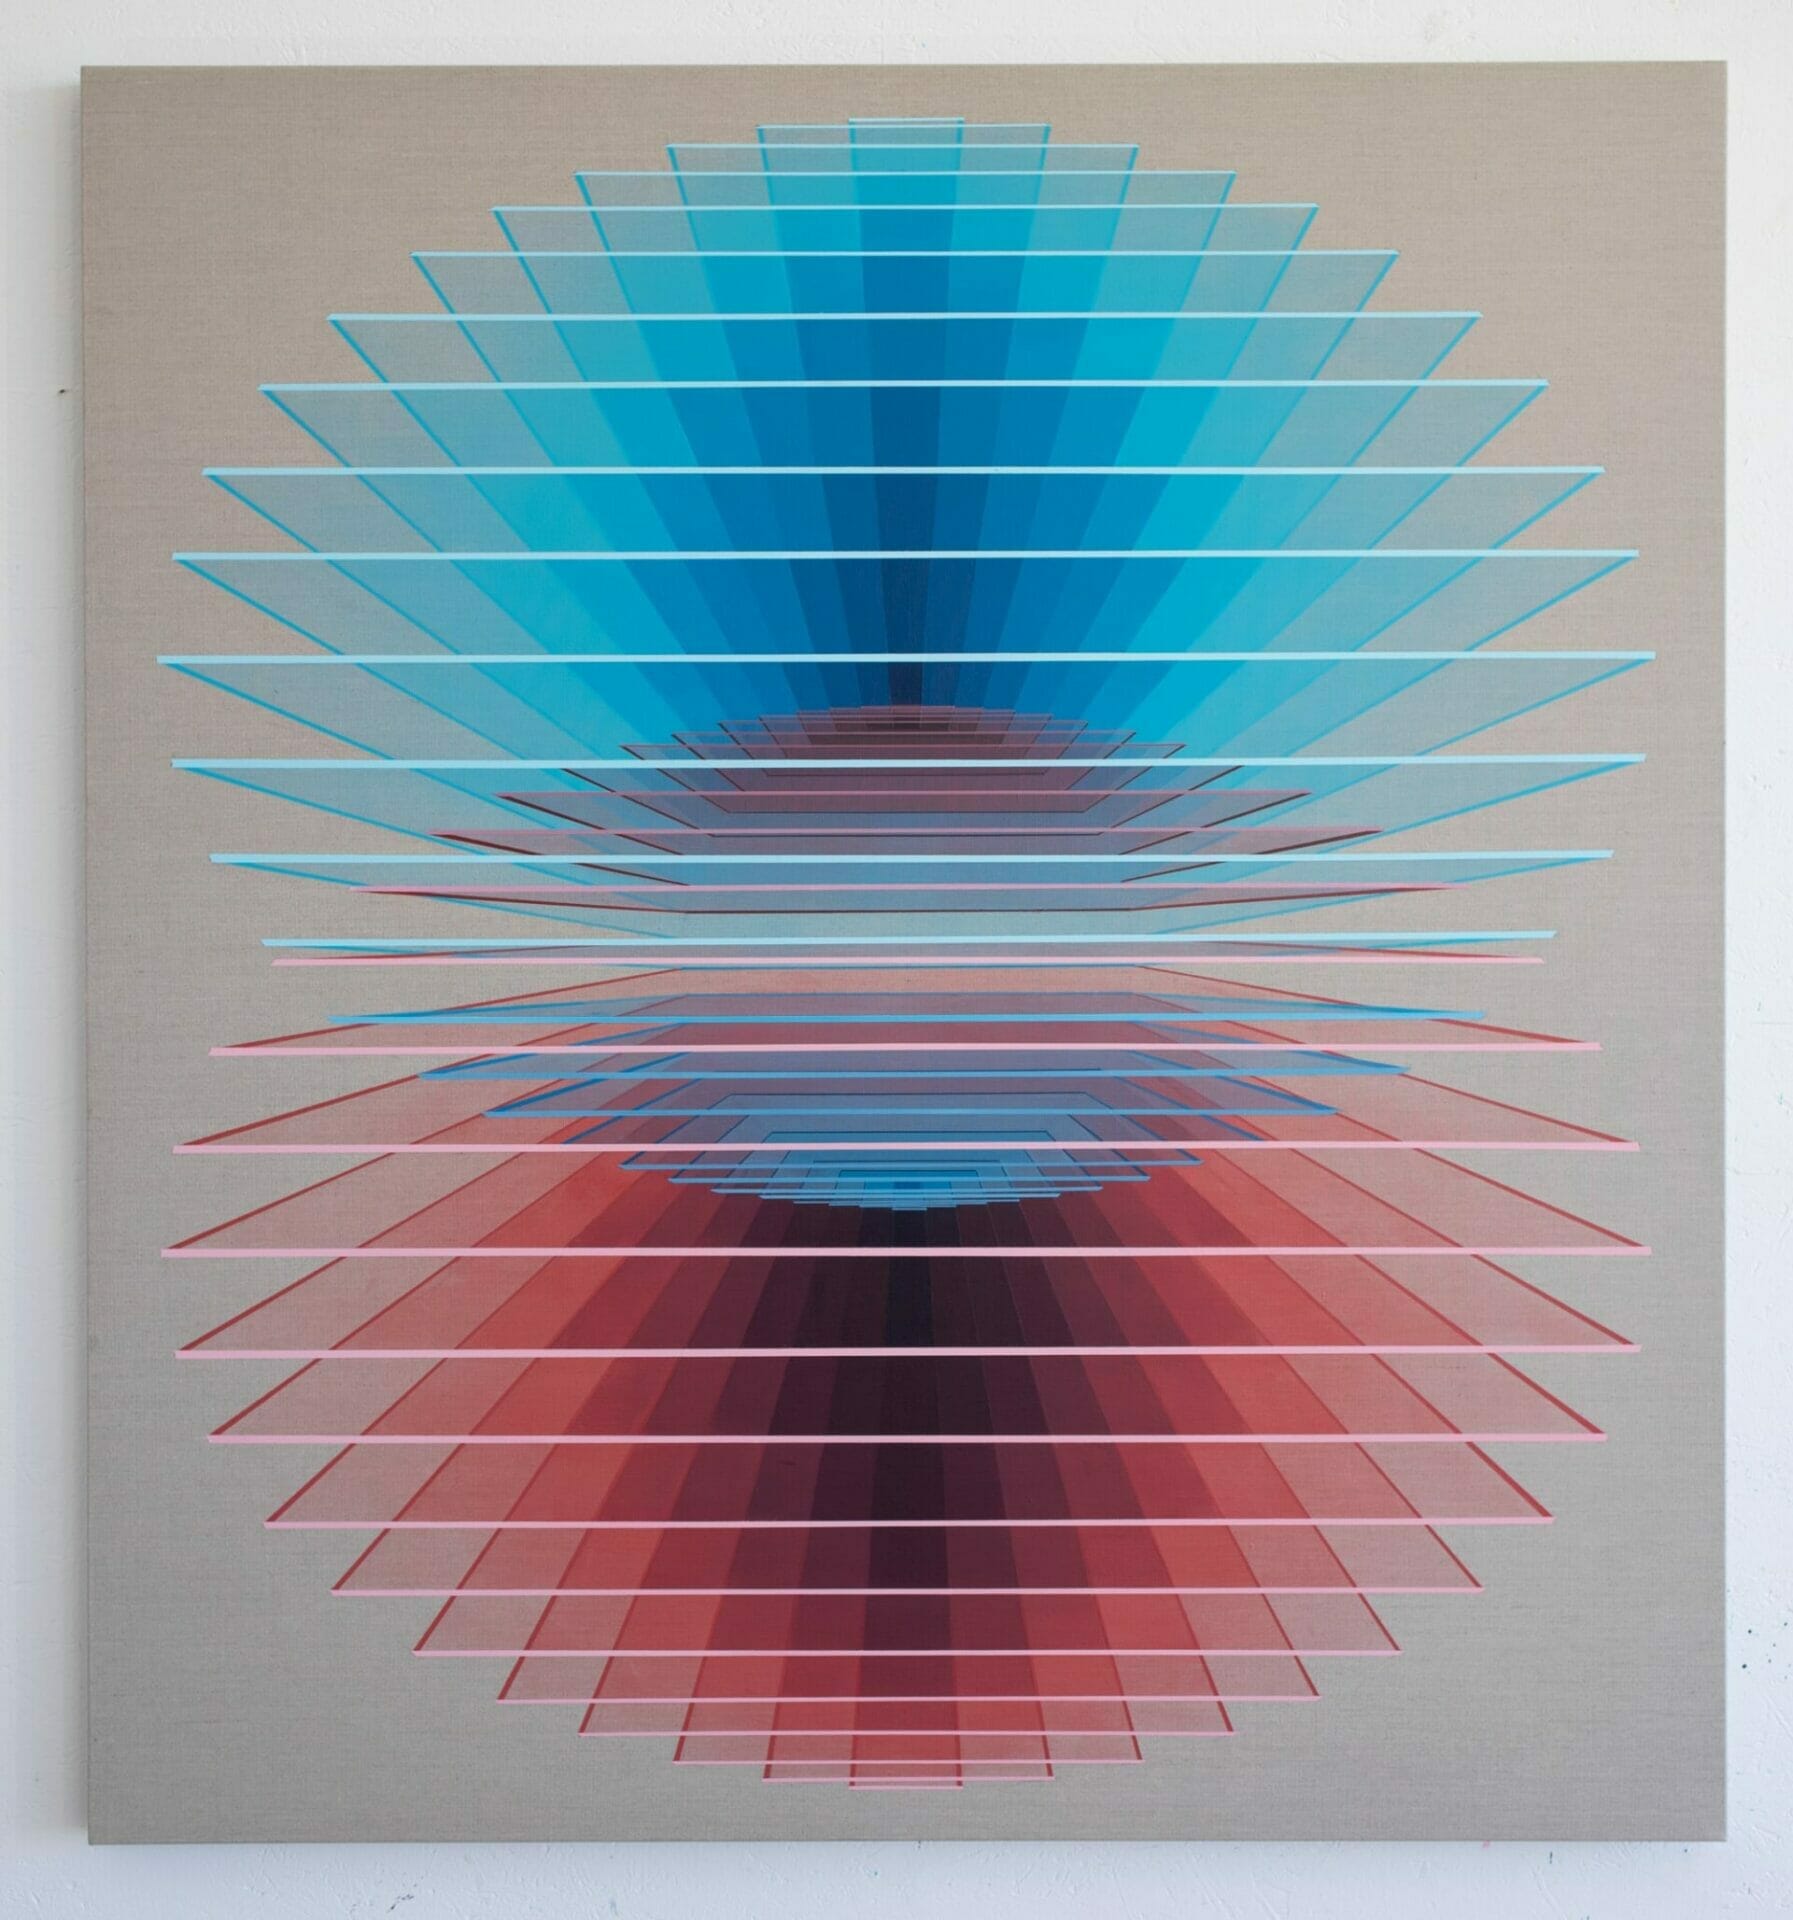 Kleurrijke geometrische patronen van Daniel Mullen